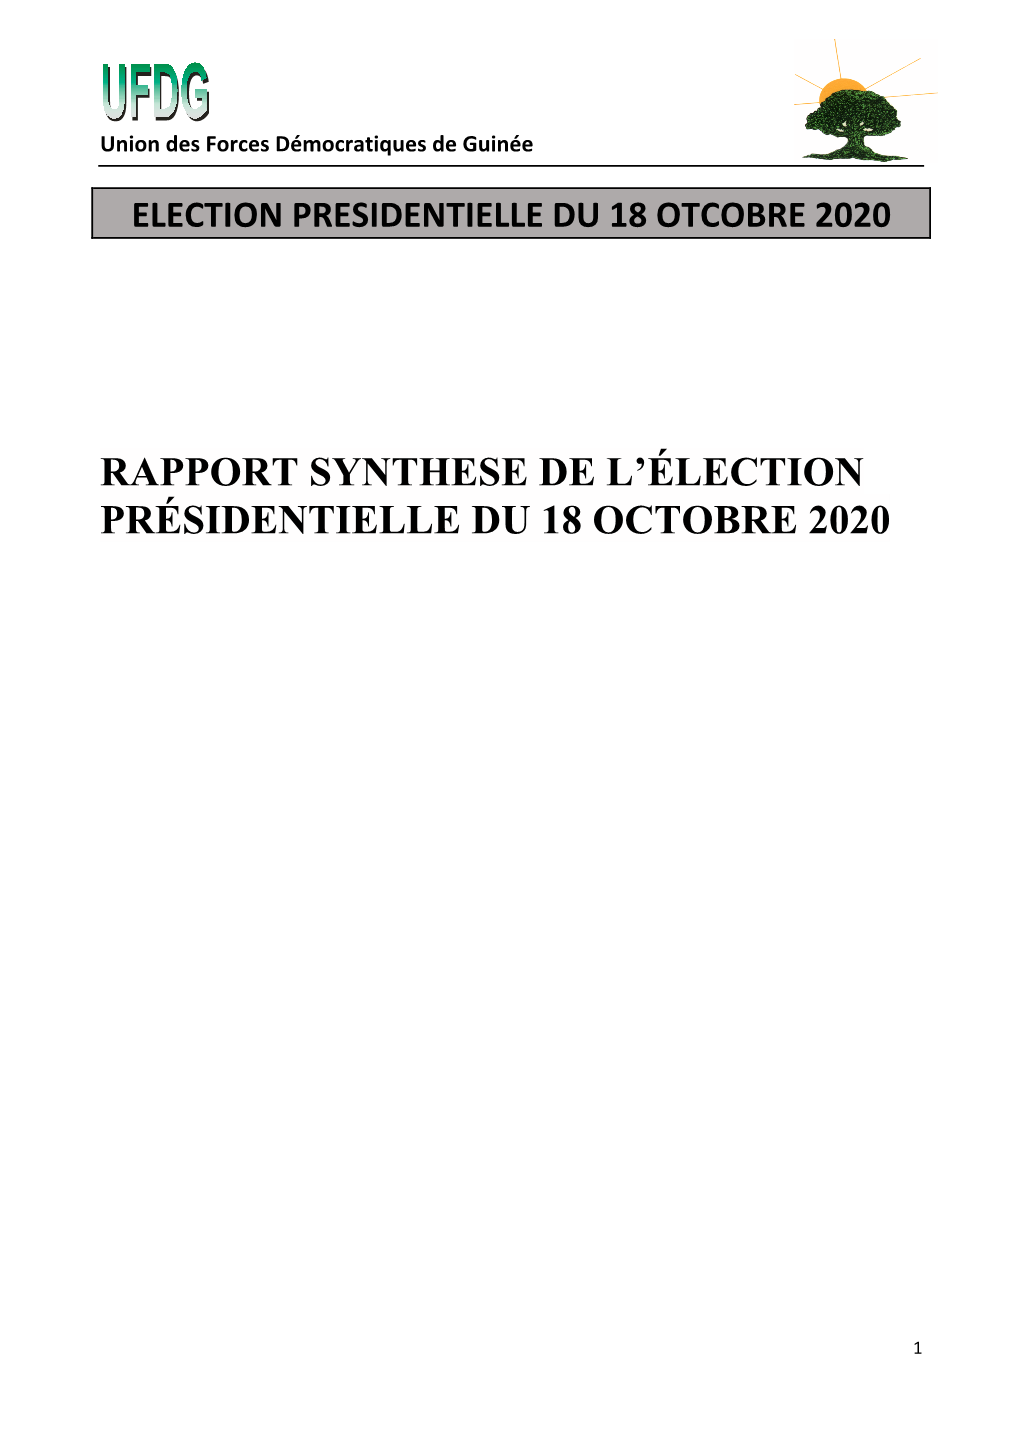 Rapport Synthese De L'élection Présidentielle Du